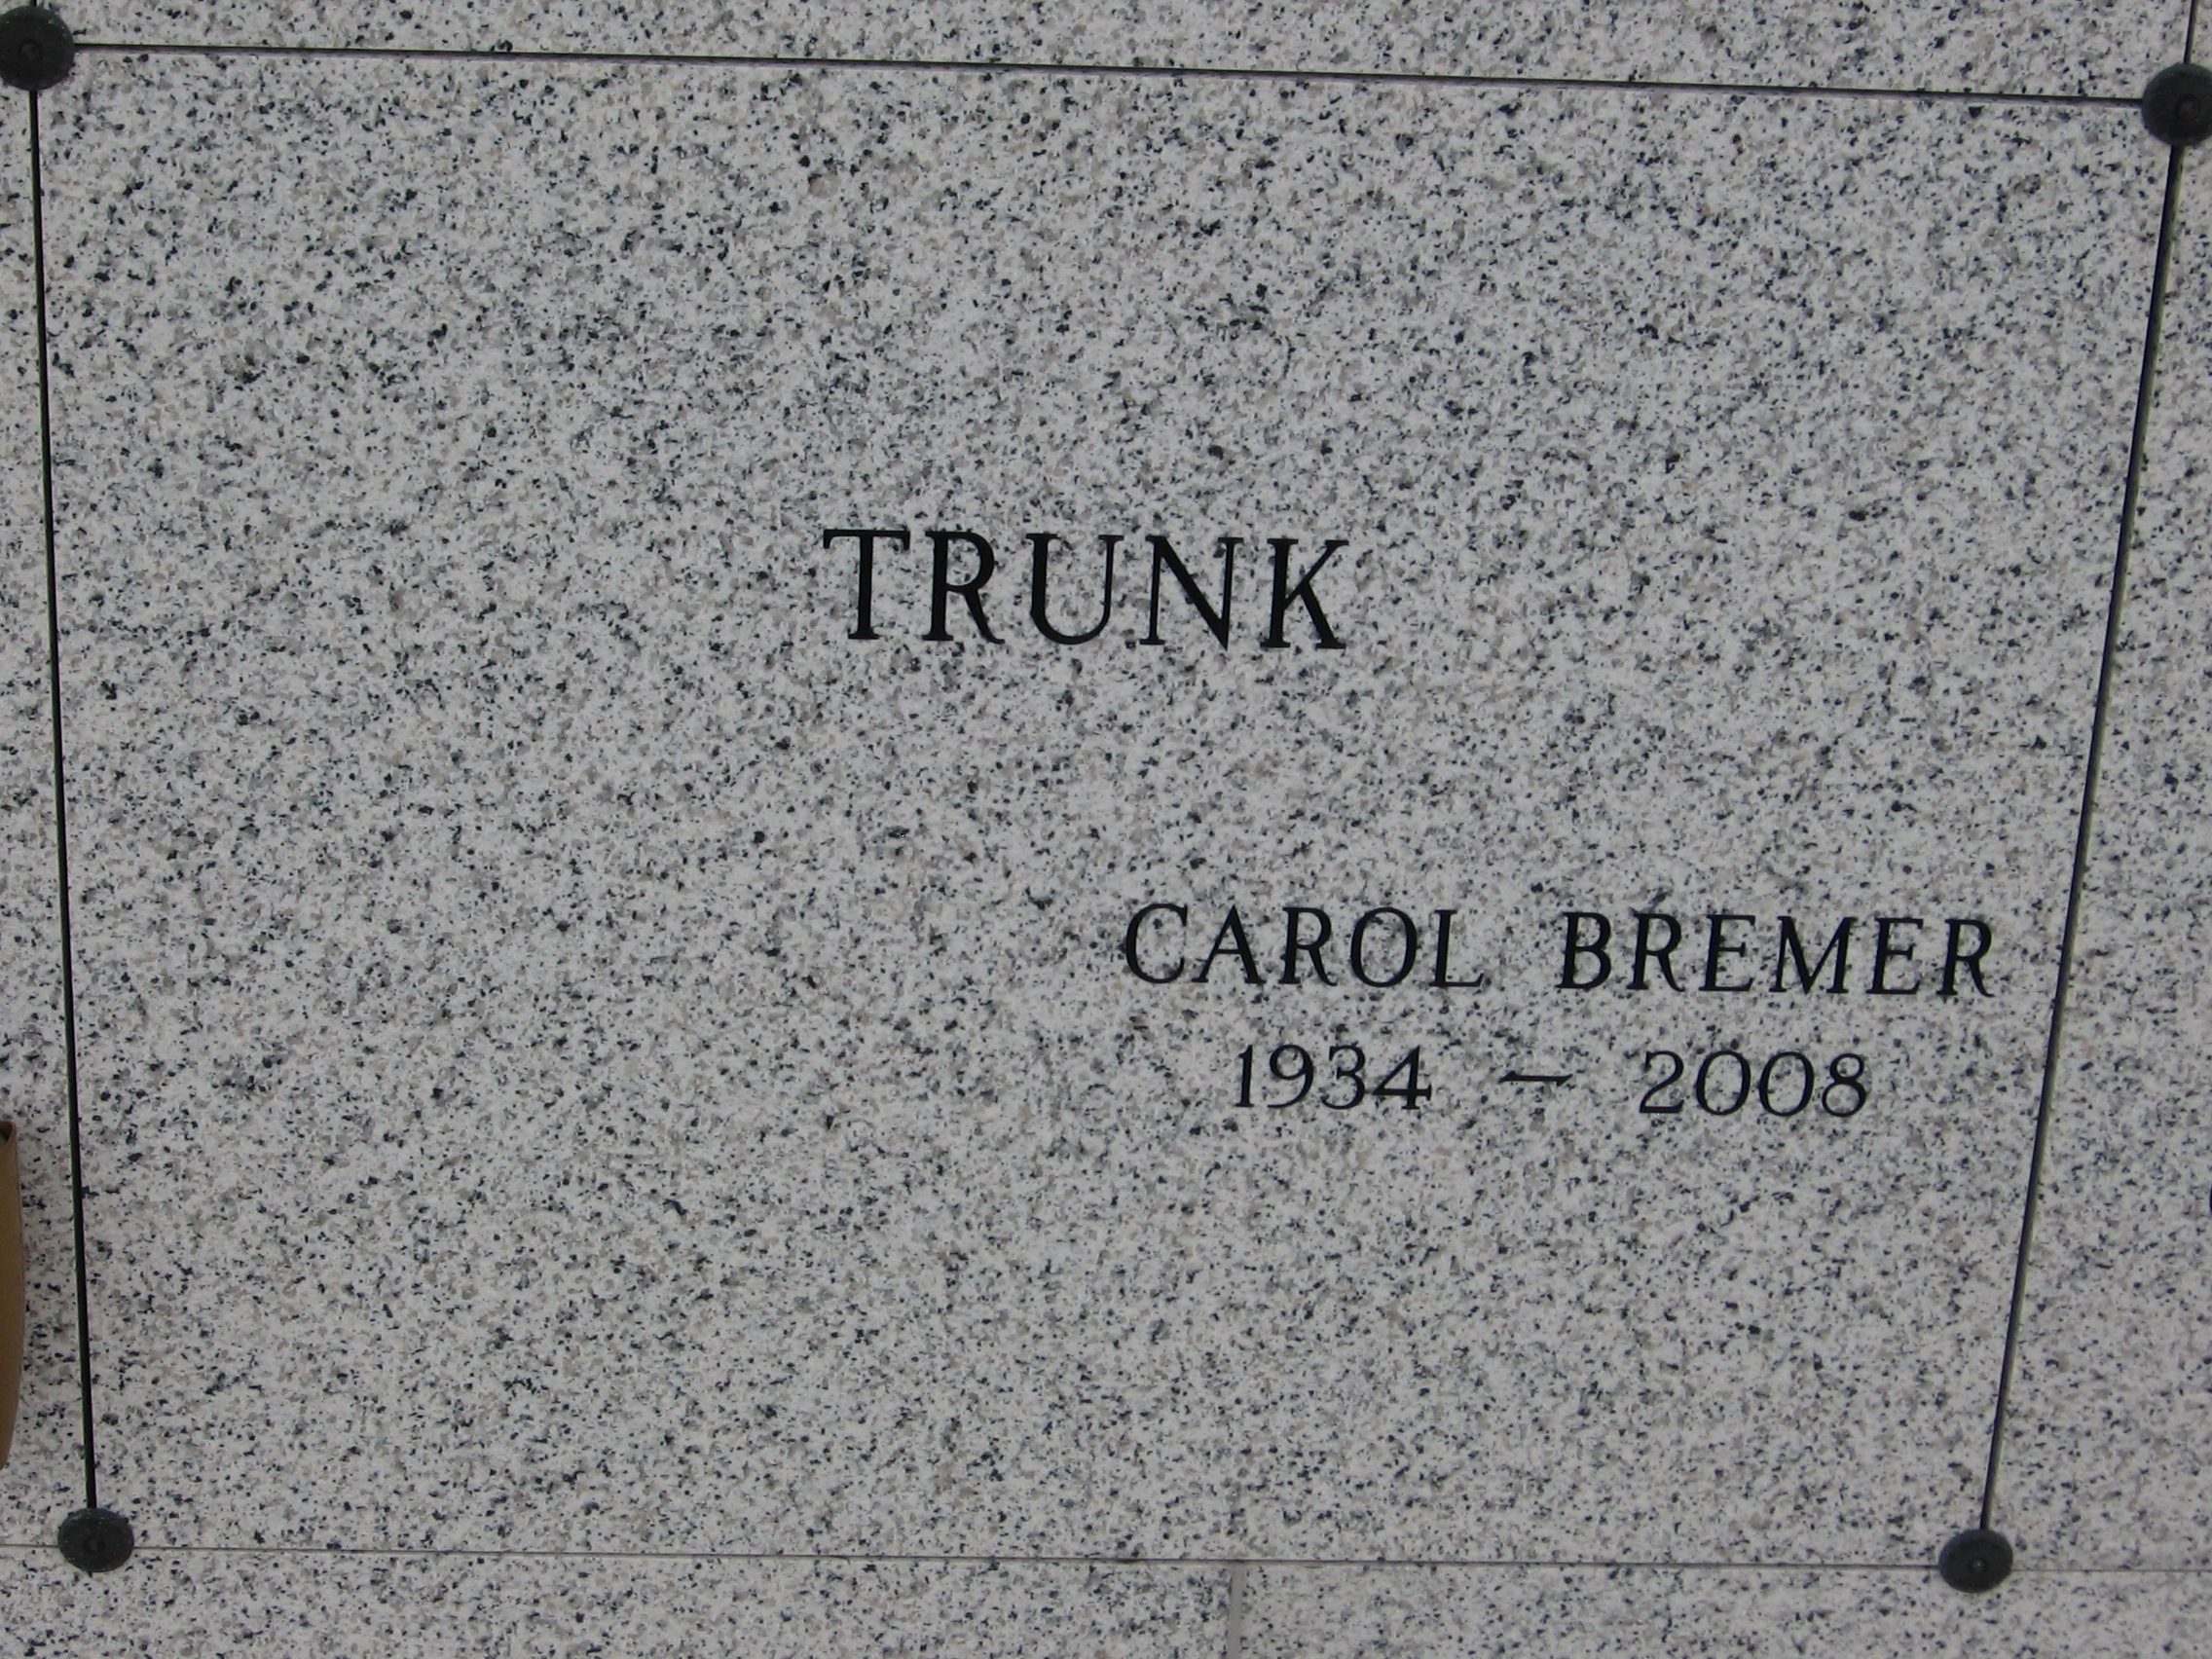 Carol Bremer Trunk